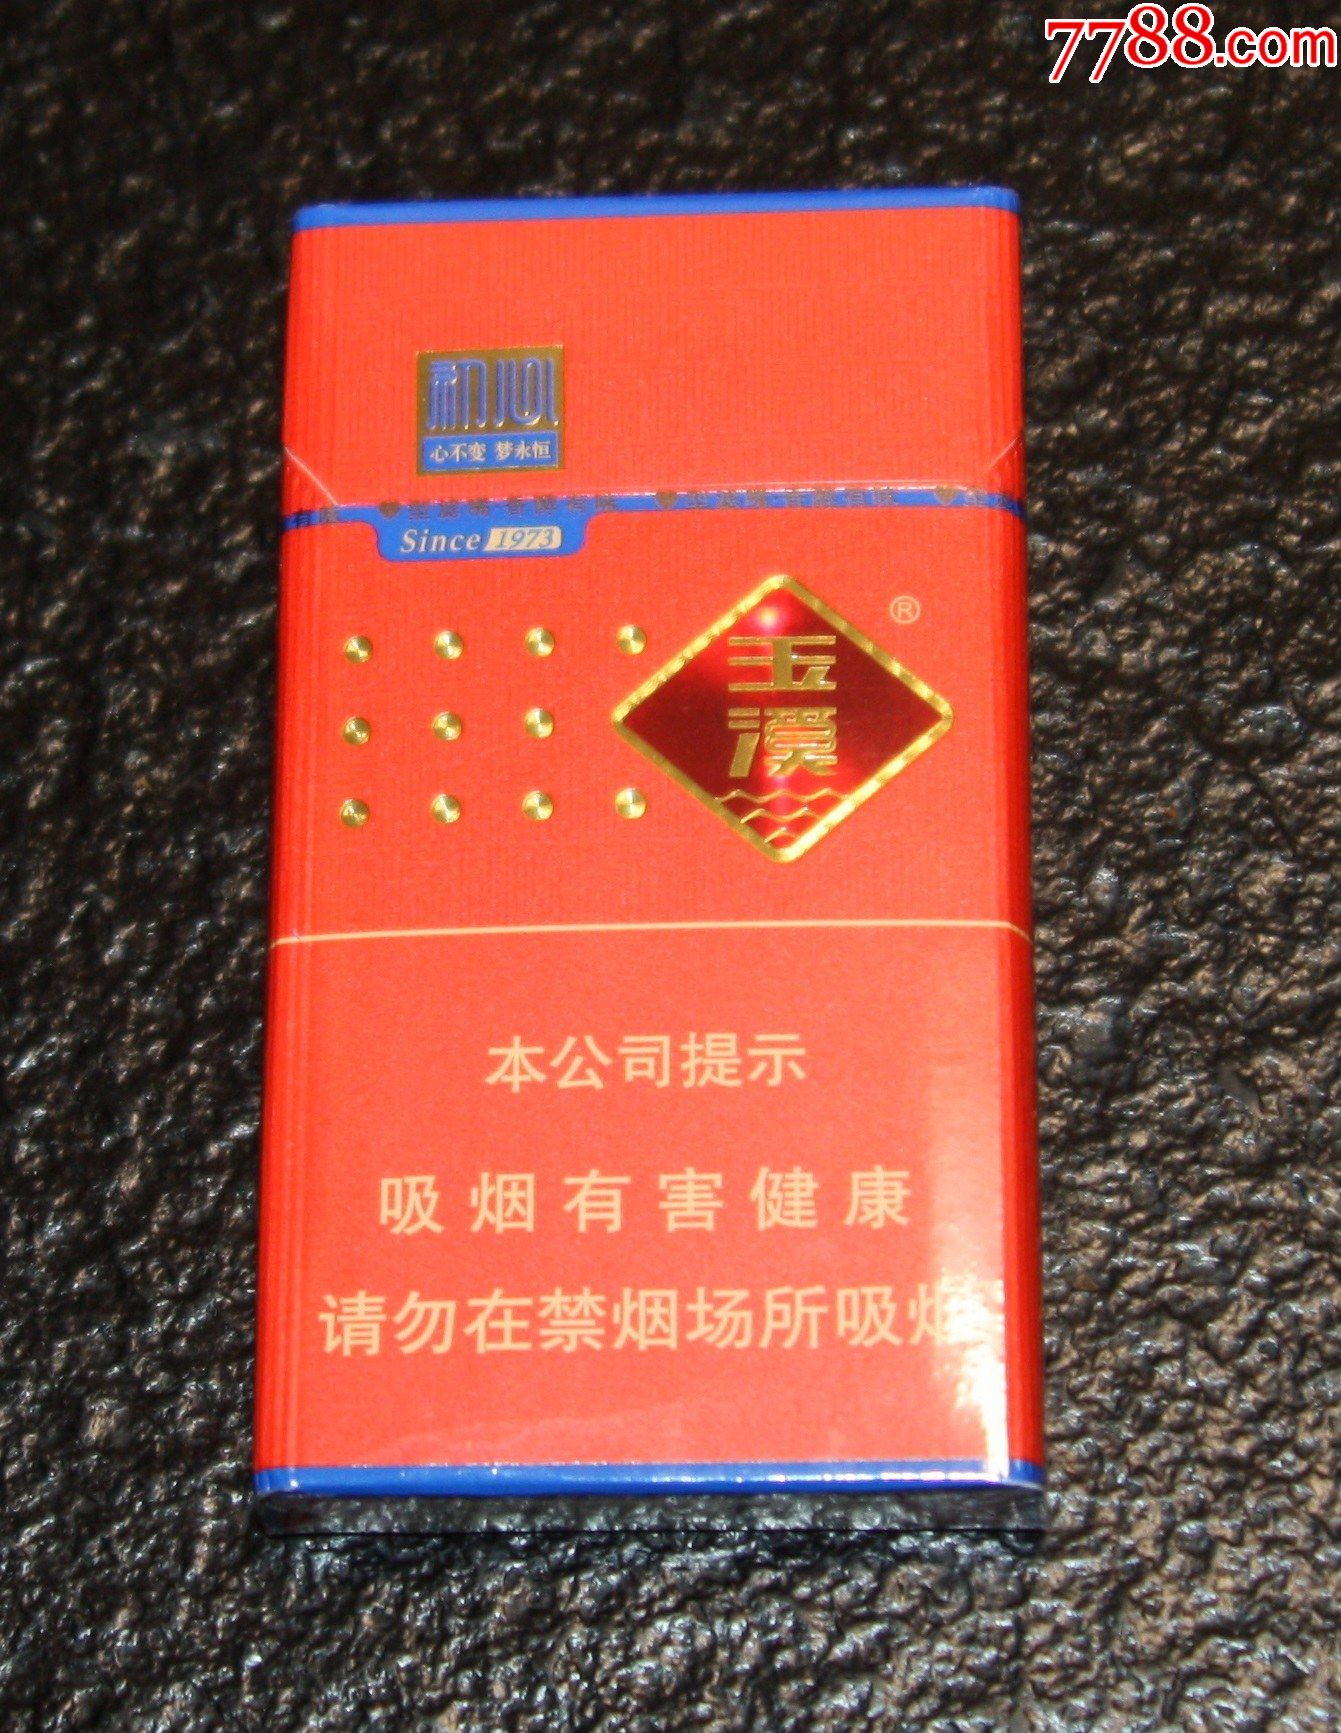 玉溪细支初心实物非卖烟标-价格:4.0000元-au24892101